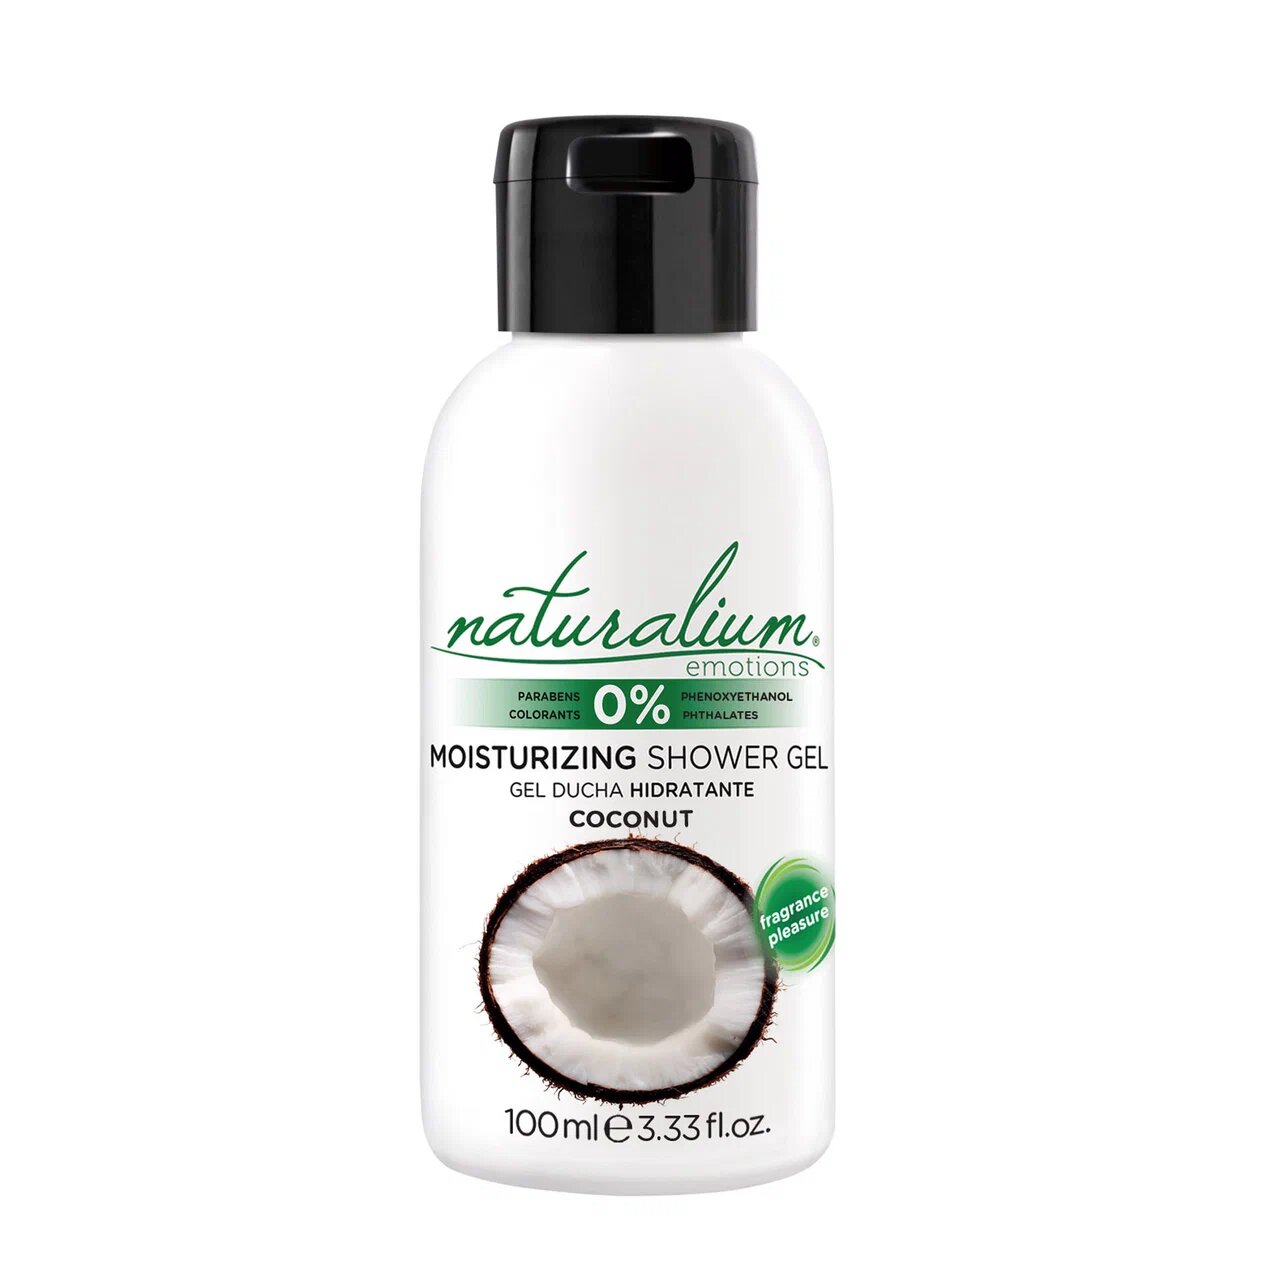 Гель-крем для душа Naturalium питательный, кокос 100 мл naturalium гель крем для душа белый лотос линия биозащита moisturizing shower gel lotus